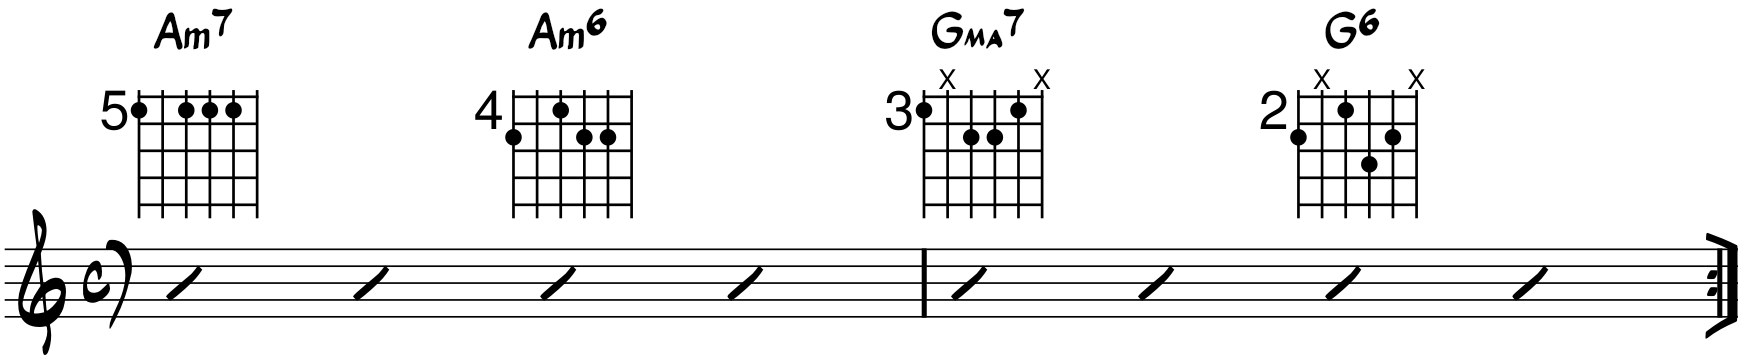 ejemplo de progresión con acorde de sexta menor guitarra